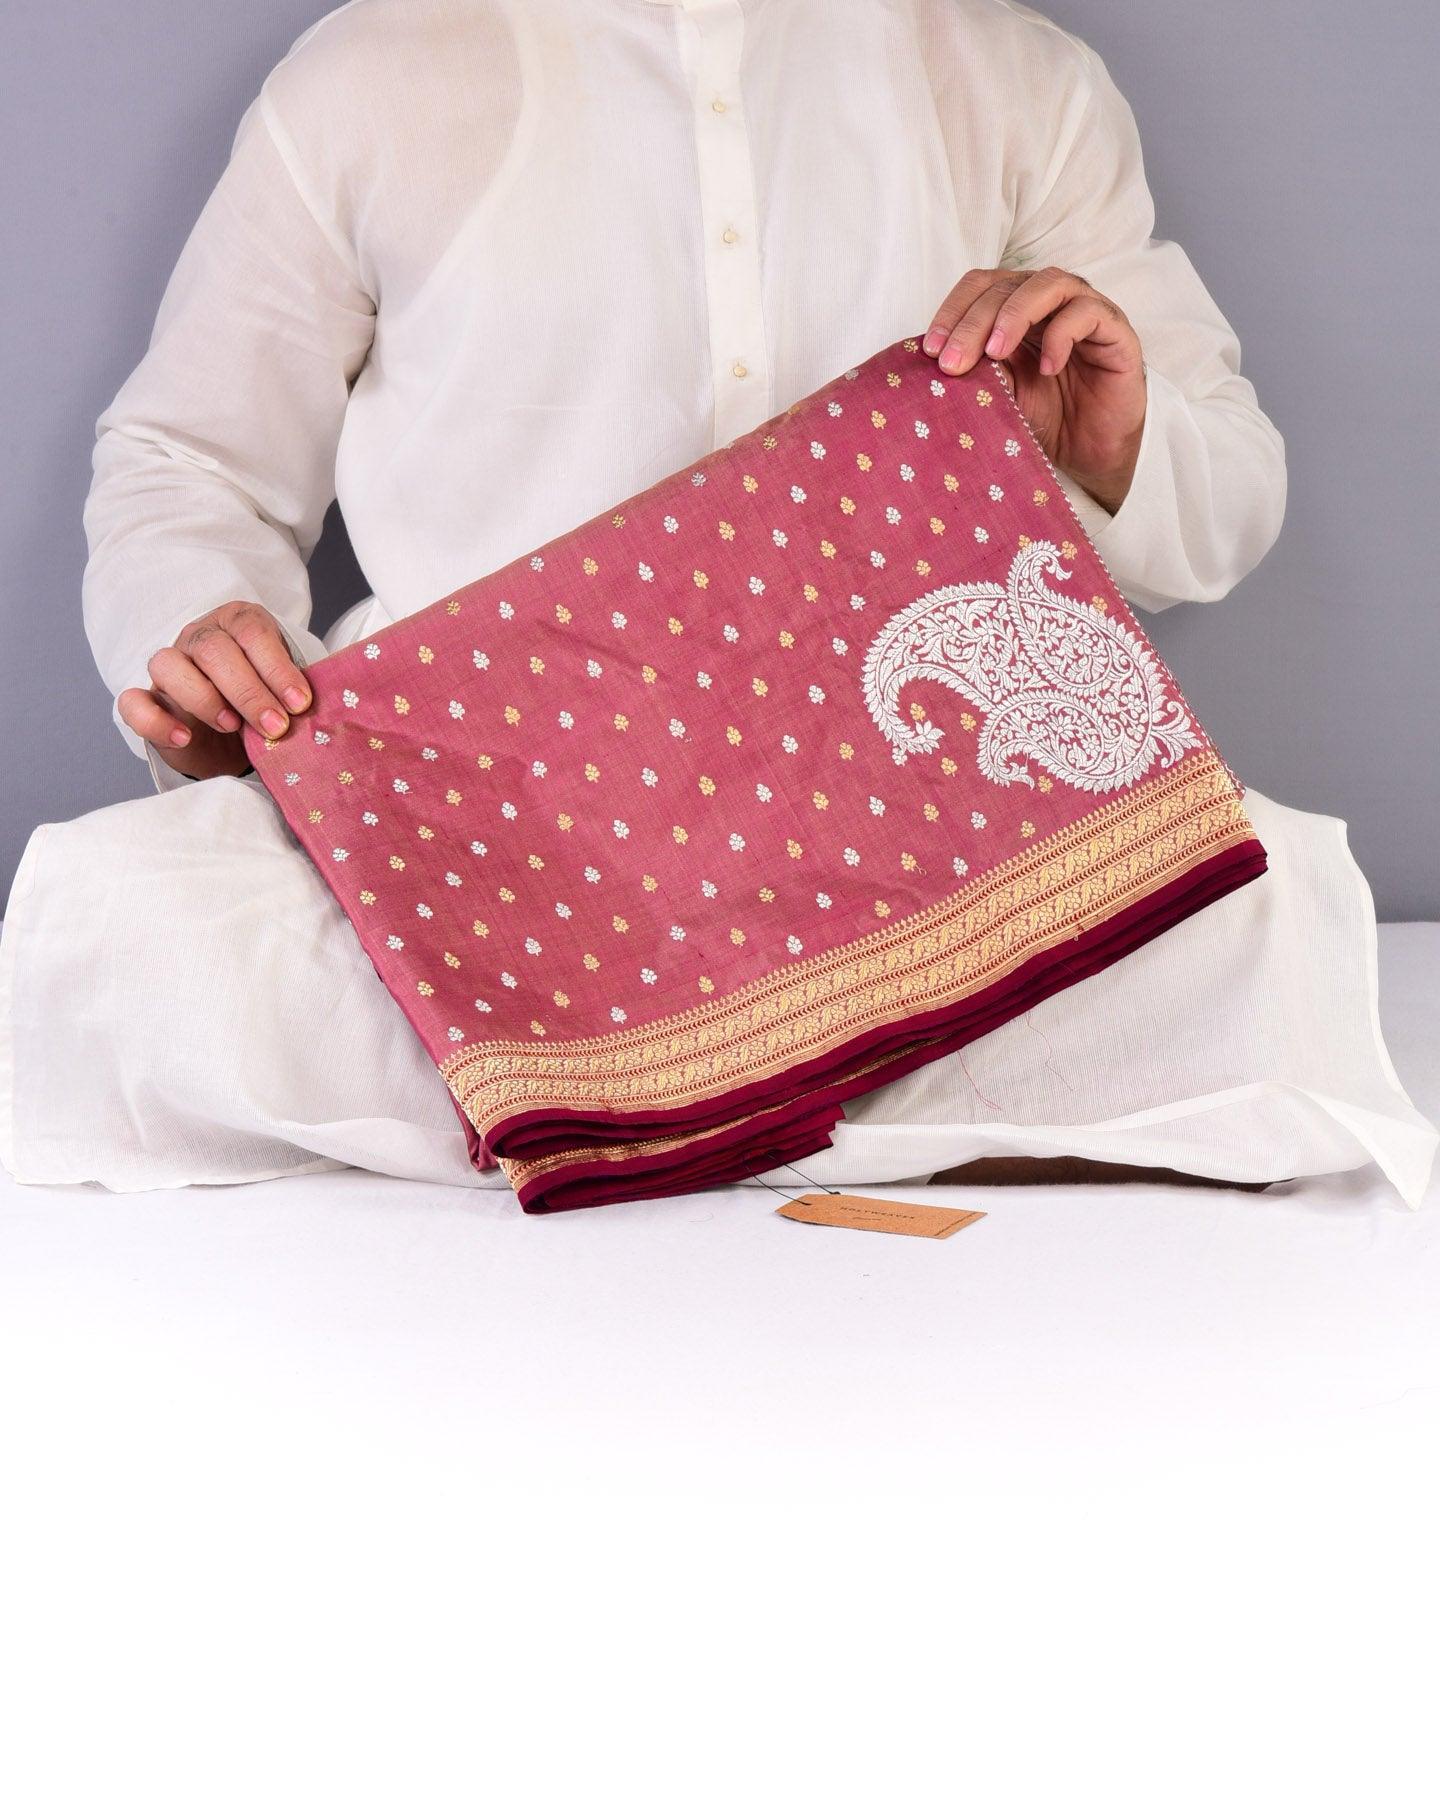 Garnet Banarasi Alfi Sona Rupa Kadhuan Brocade Handwoven Katan Silk Saree - By HolyWeaves, Benares